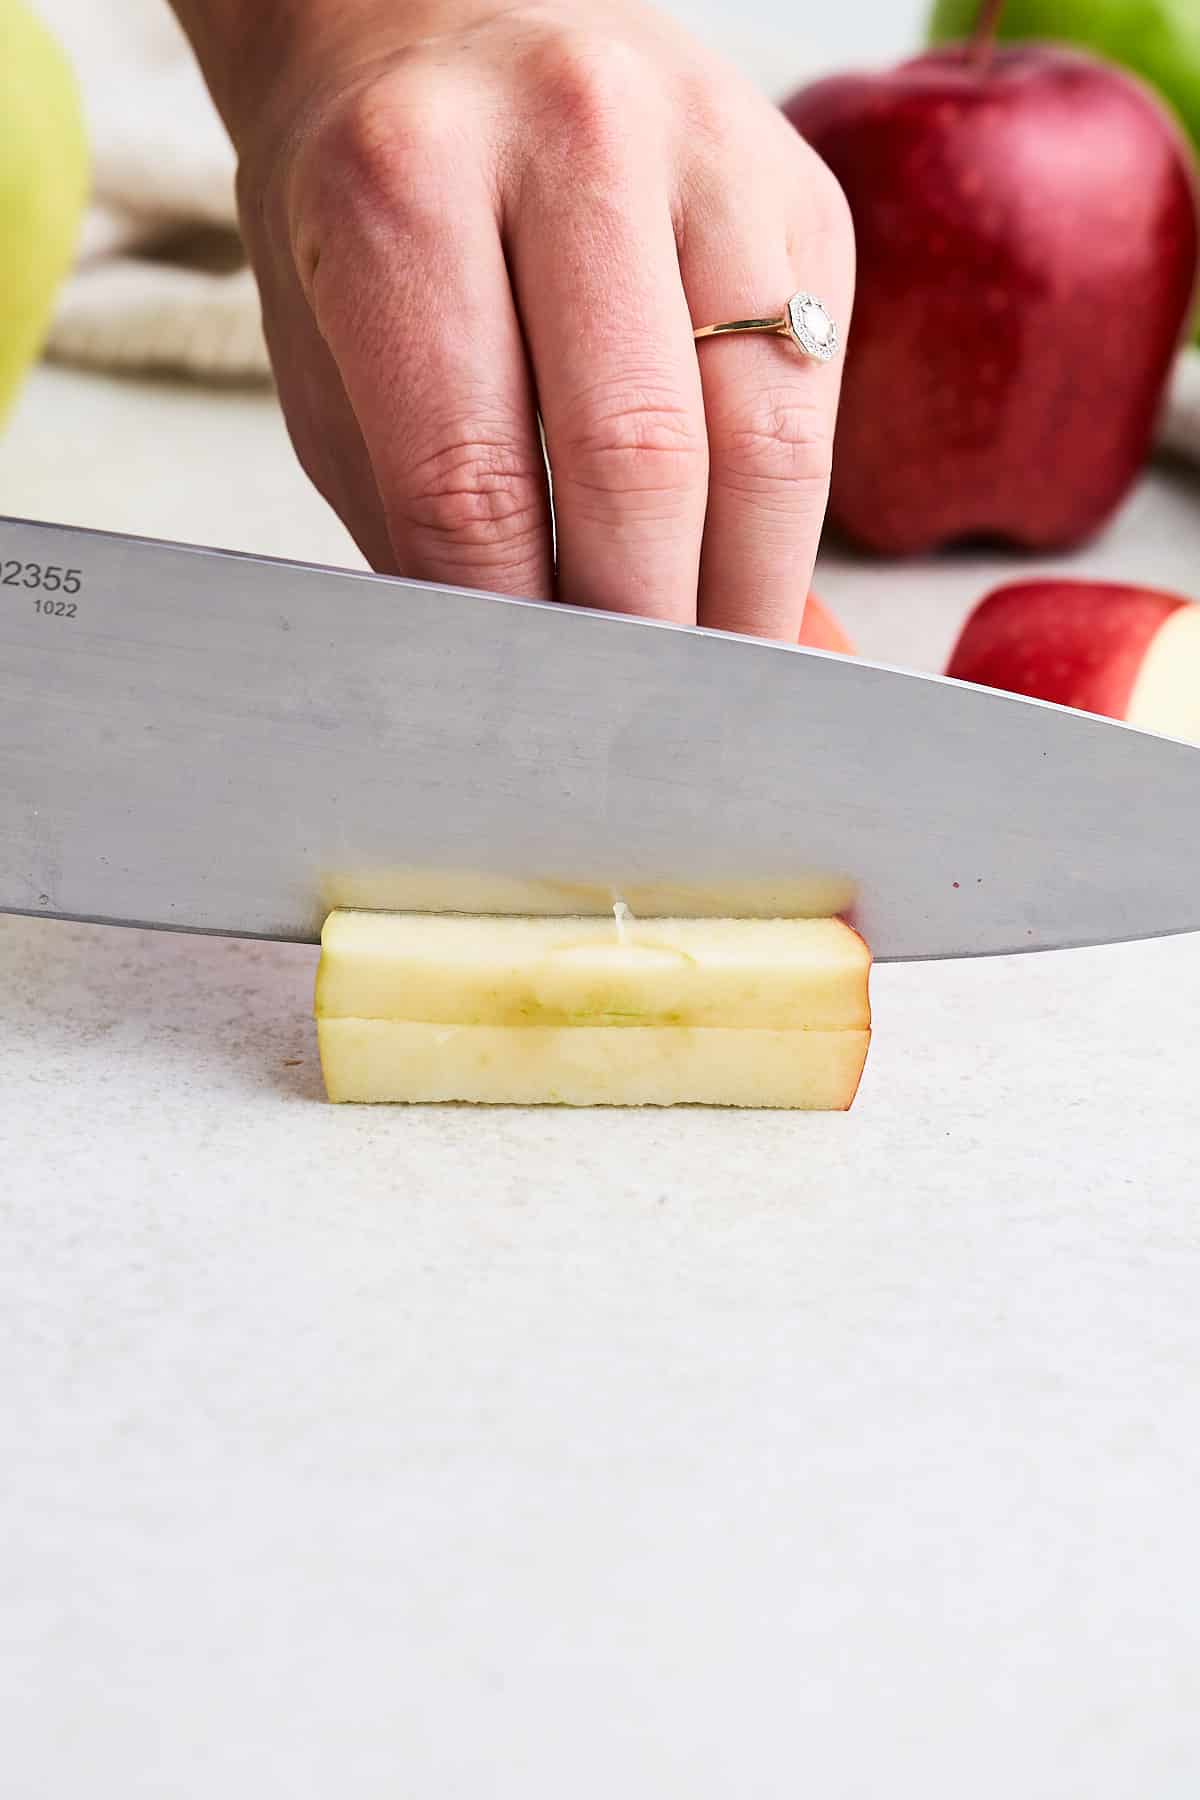 Cutting an apple into thick matchsticks.